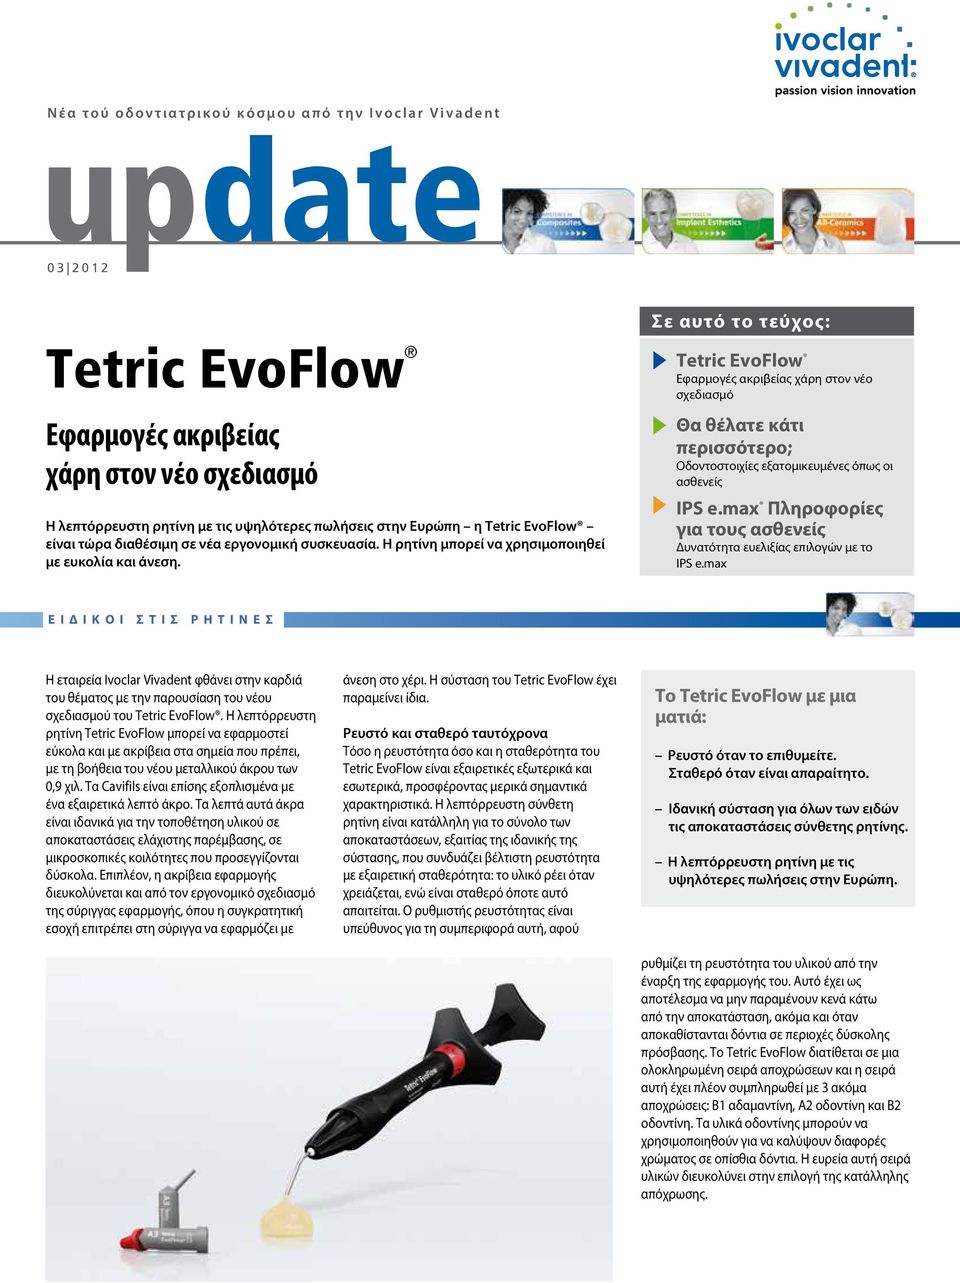 Σε αυτό το τεύχος: Tetric EvoFlow Εφαρμογές ακριβείας χάρη στον νέο σχεδιασμό Θα θέλατε κάτι περισσότερο; Οδοντοστοιχίες εξατομικευμένες όπως οι ασθενείς IPS e.